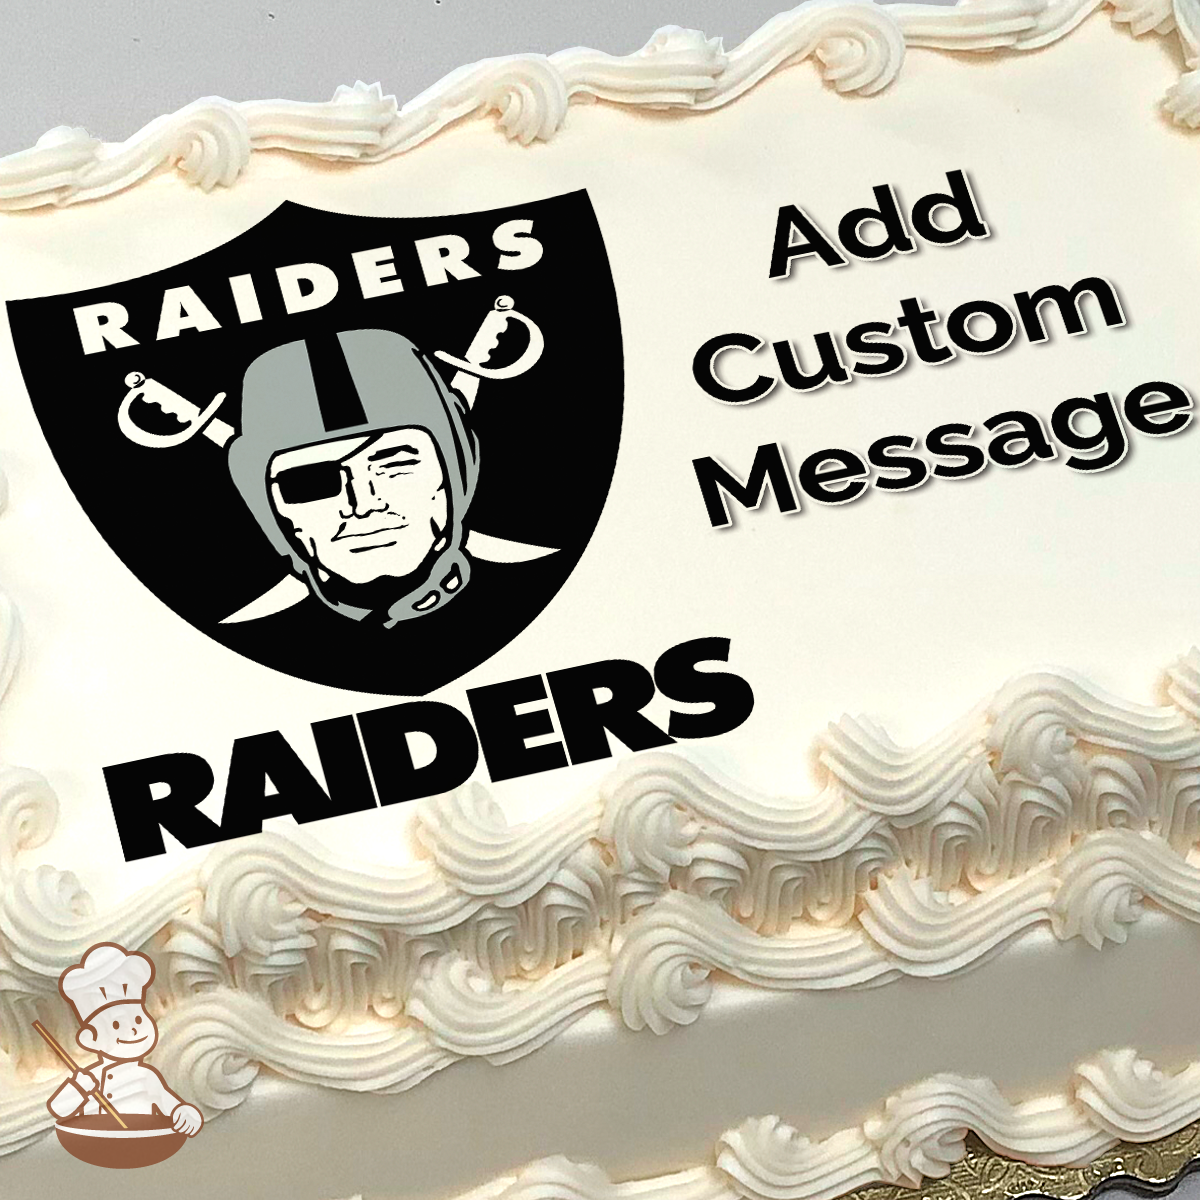 Raiders bday cake  Raiders cake, Raiders, Cake design